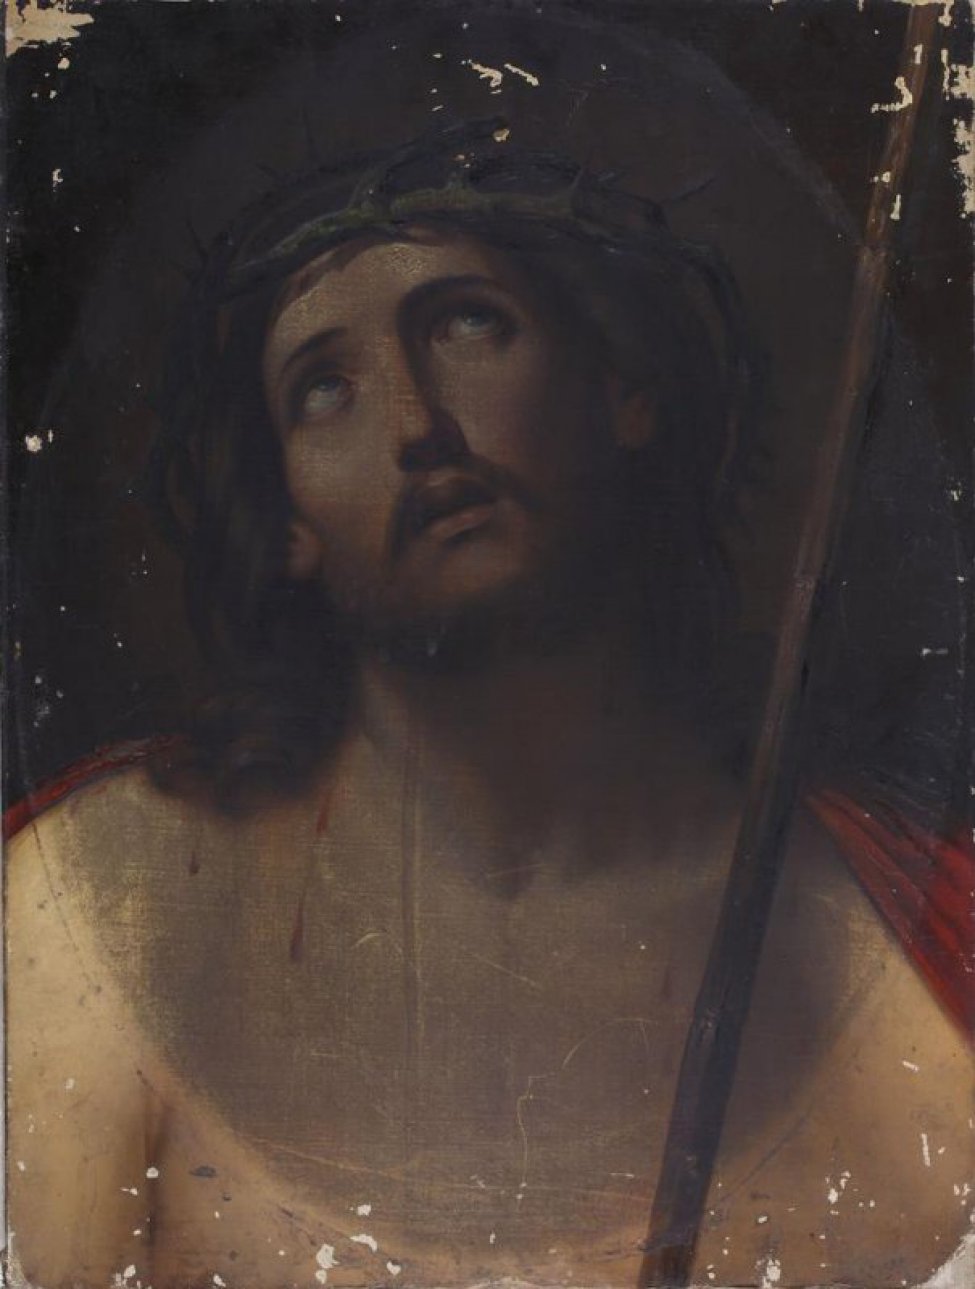 Изображан погрудно Христос в тернговом венце. Голова и глаза подняты кверху, длинные волосы падают на плечи. Одежда красного цвета.